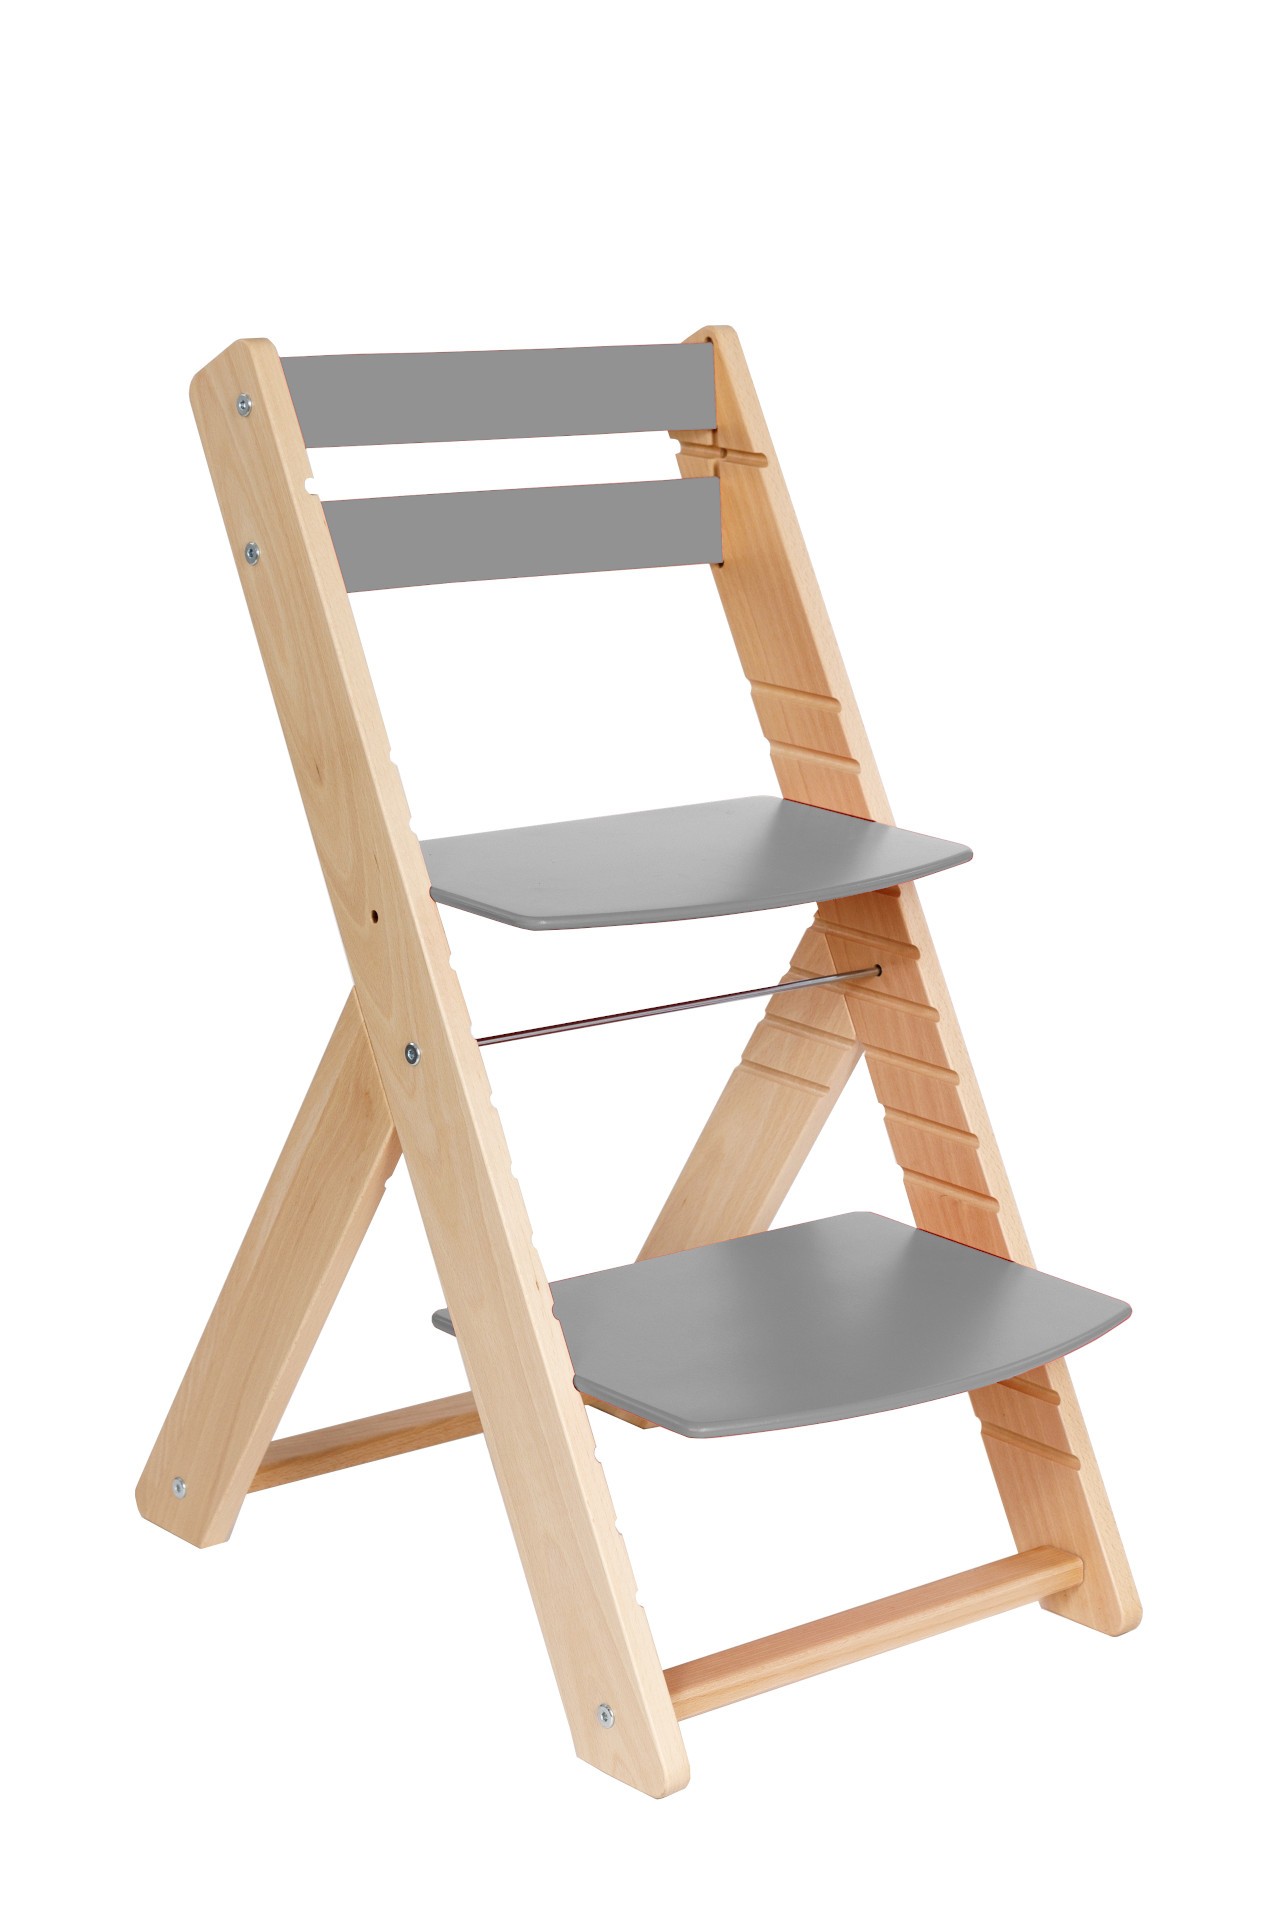 Wood Partner Rostoucí židle Vendy - natur lak / šedá